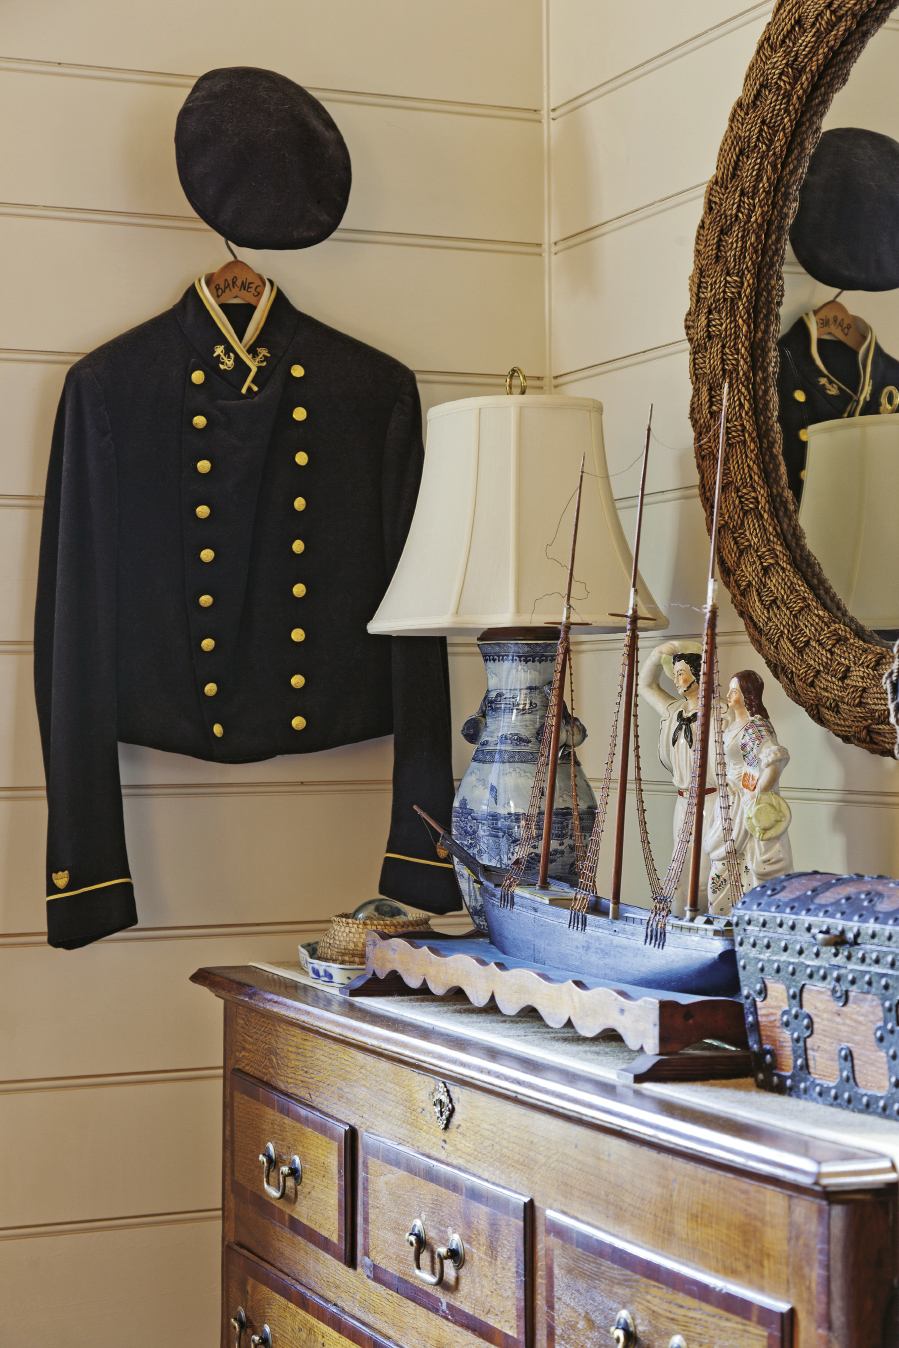 An antique seafarer’s uniform graces the second-floor bedroom.